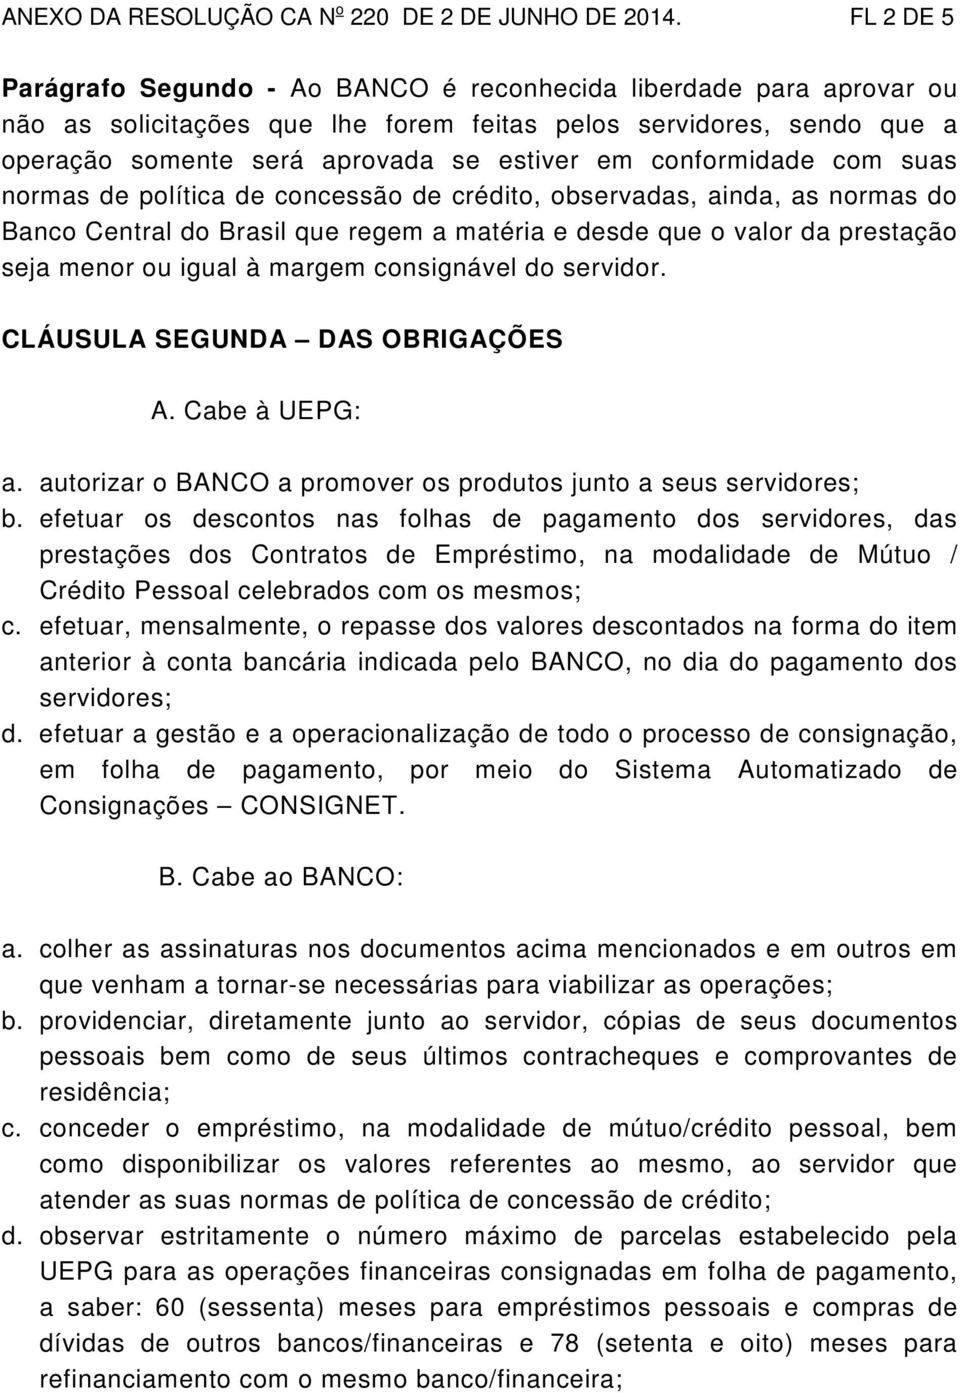 conformidade com suas normas de política de concessão de crédito, observadas, ainda, as normas do Banco Central do Brasil que regem a matéria e desde que o valor da prestação seja menor ou igual à